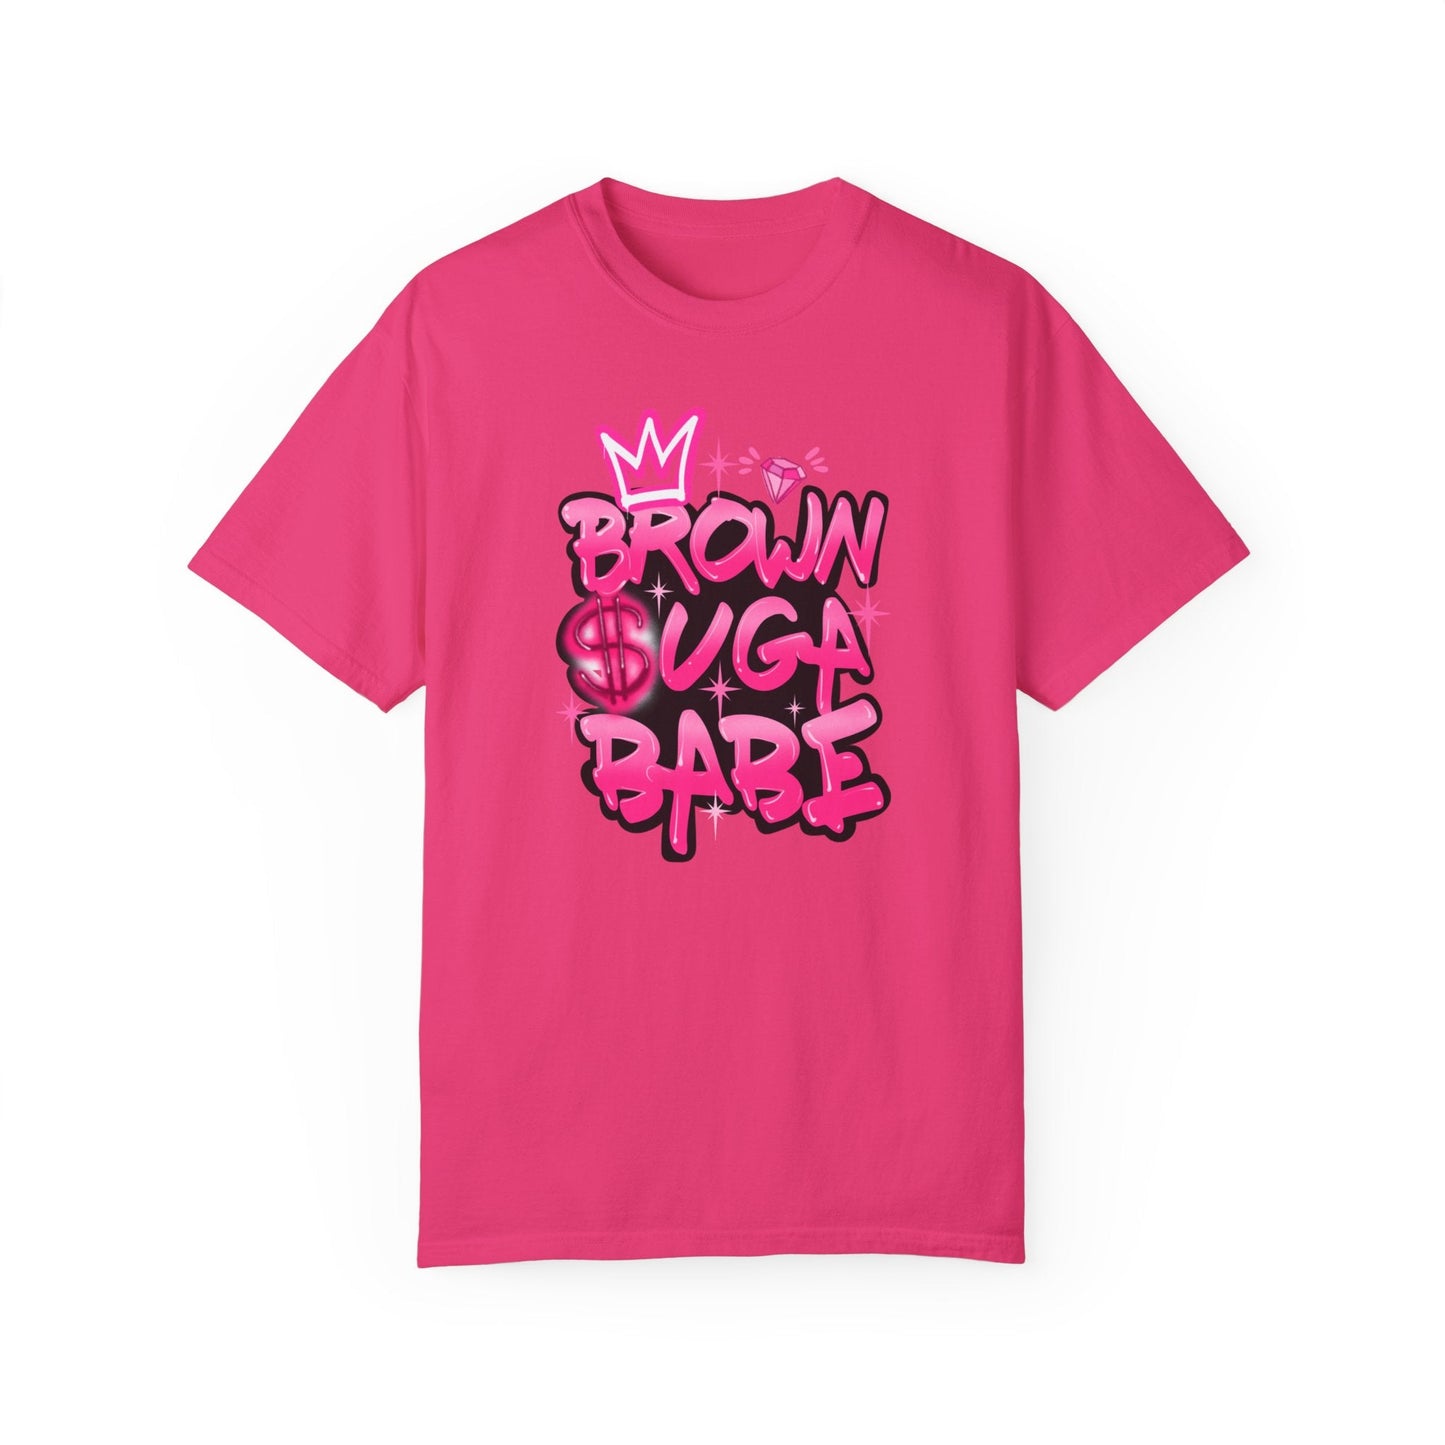 Brown Suga Babe (Pink) bundle